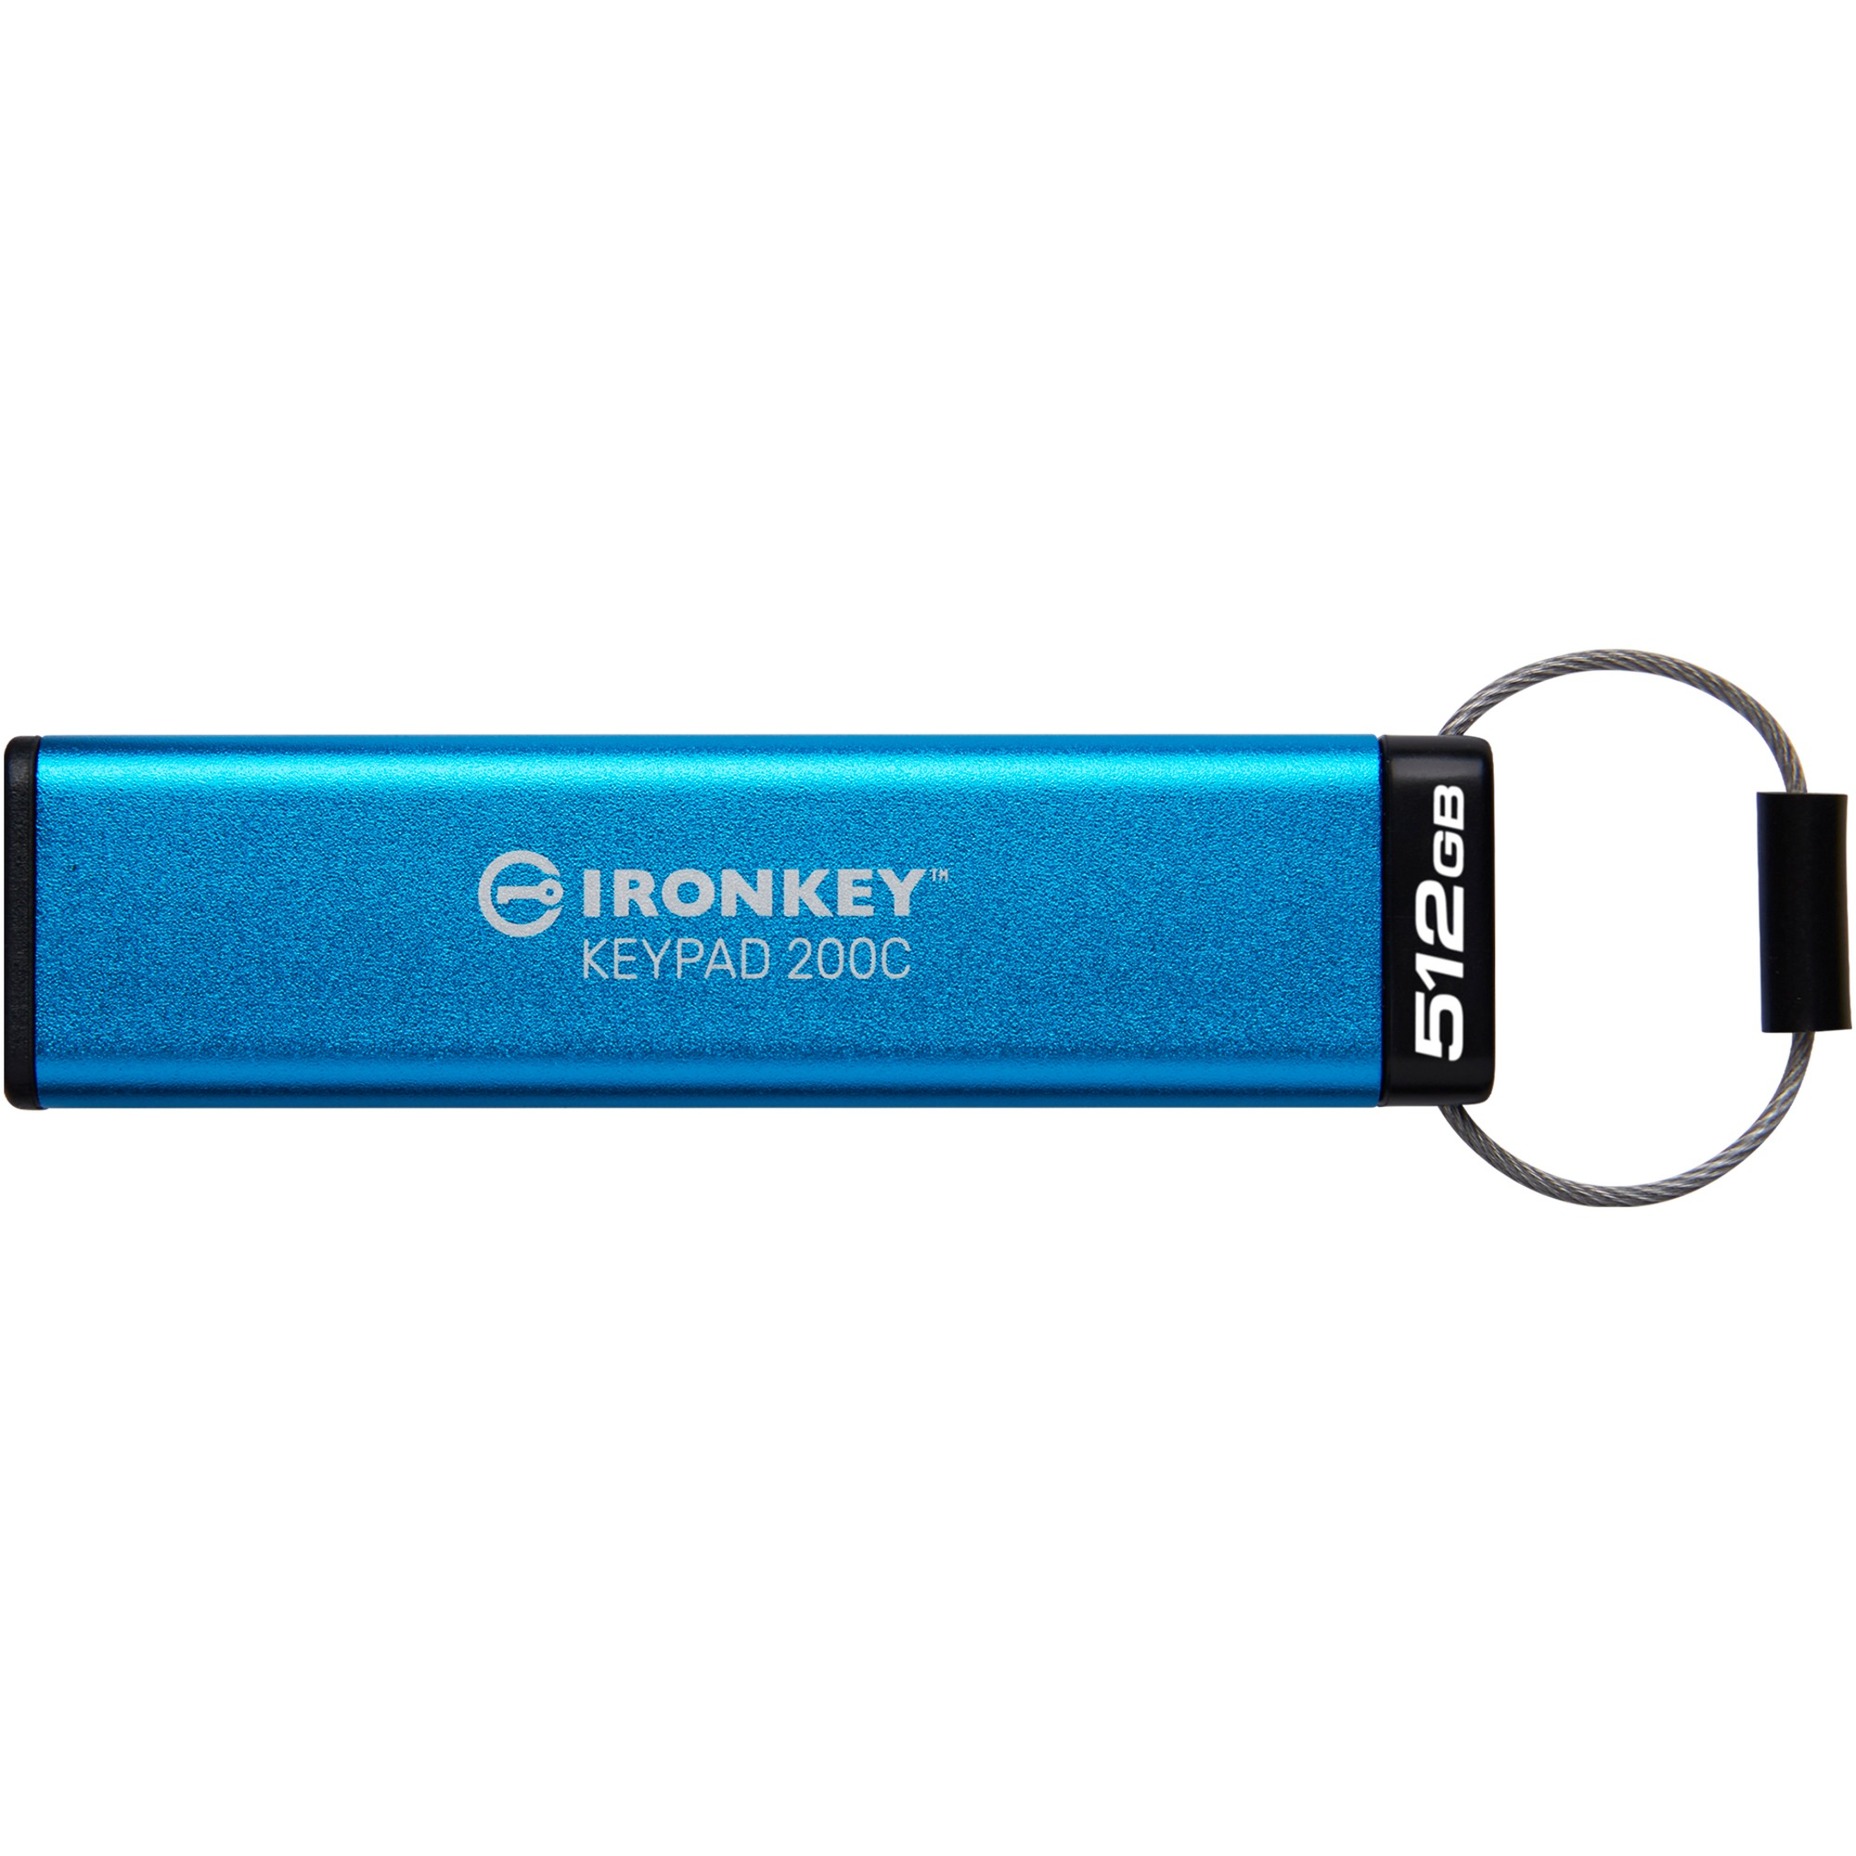 IronKey Keypad 200 512 GB, USB-Stick von Kingston